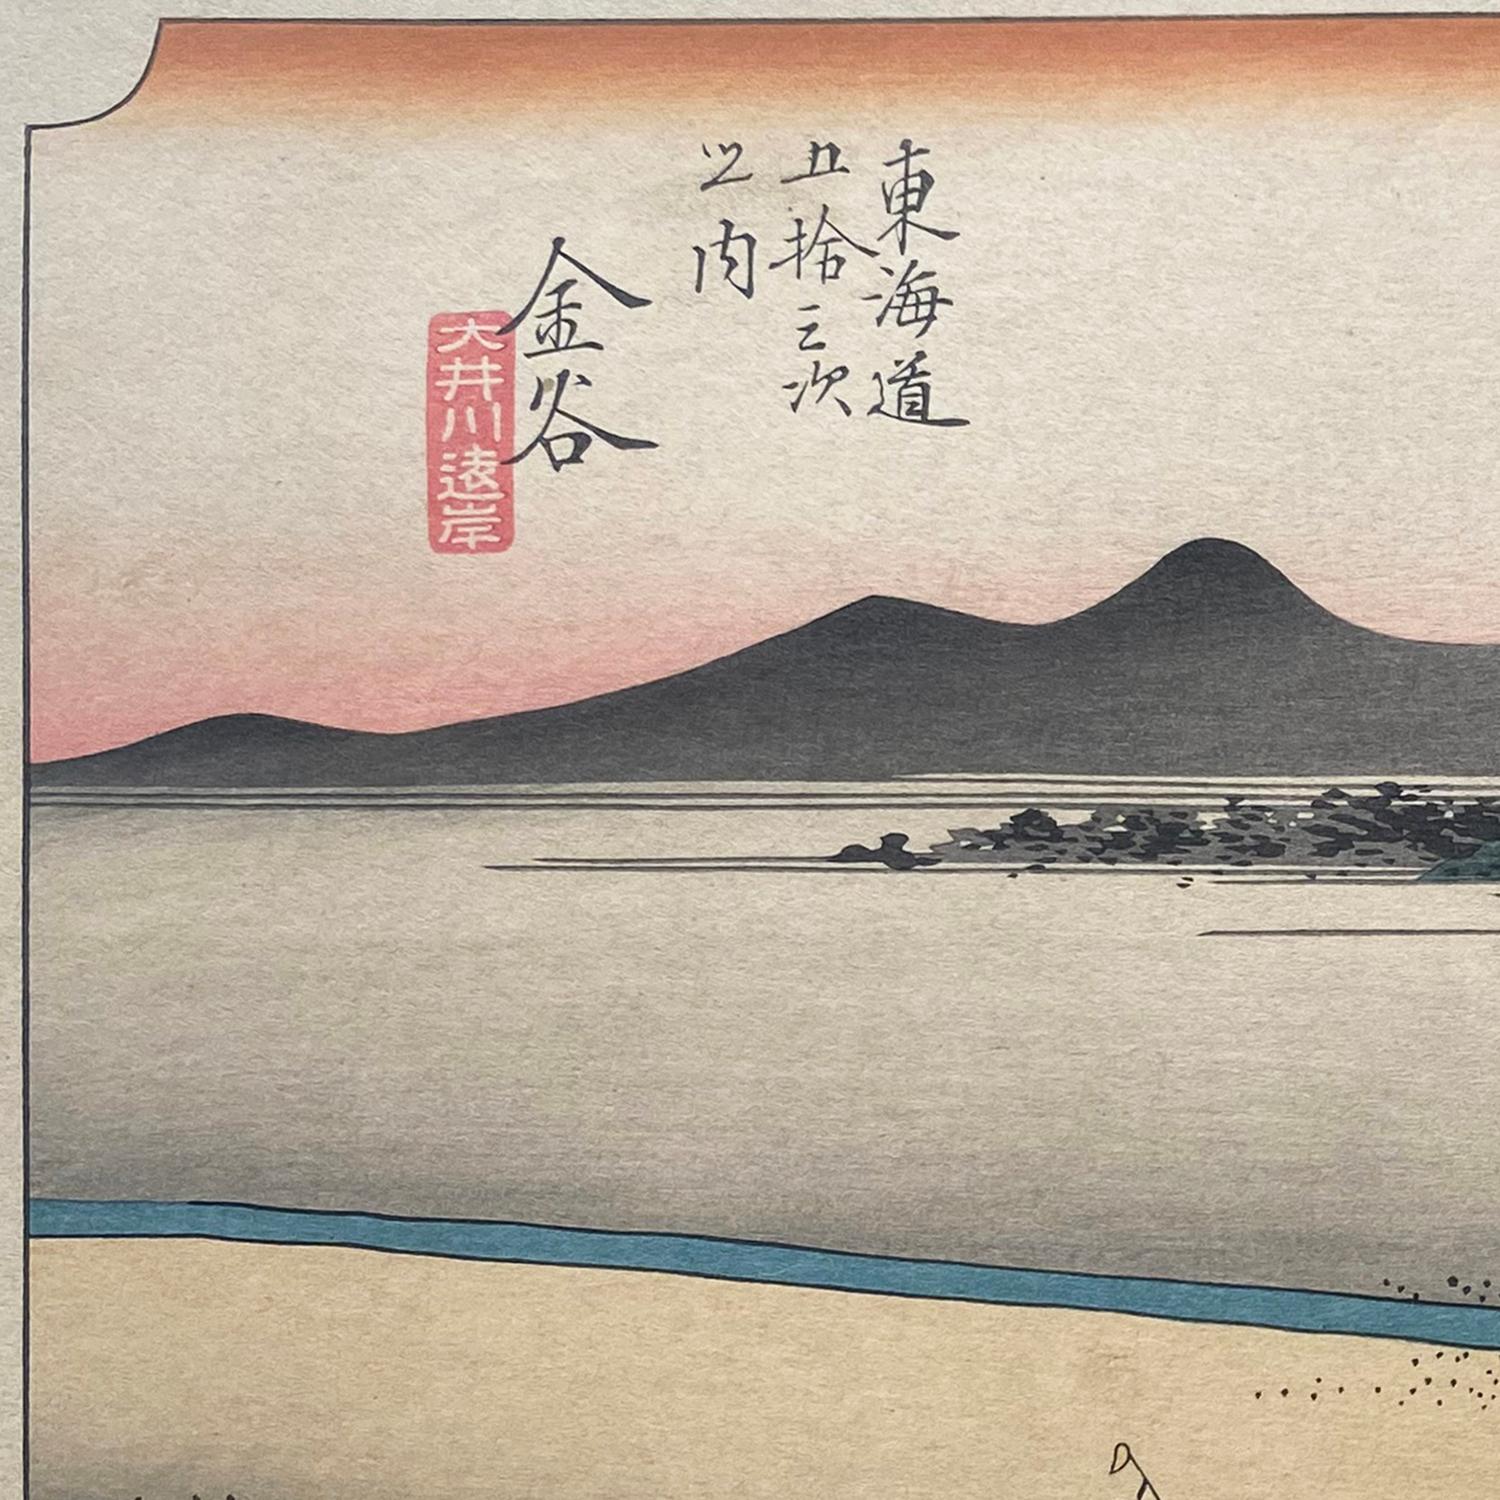 Eine Tusche auf Papier, Nishiki-e- und Yoko-e-Holzschnittlandschaft mit einer Ansicht von Reisenden, die den Fluss Ōi bei Kanaya überqueren, um 1850. Signiert in Kanji Mitte rechts, 